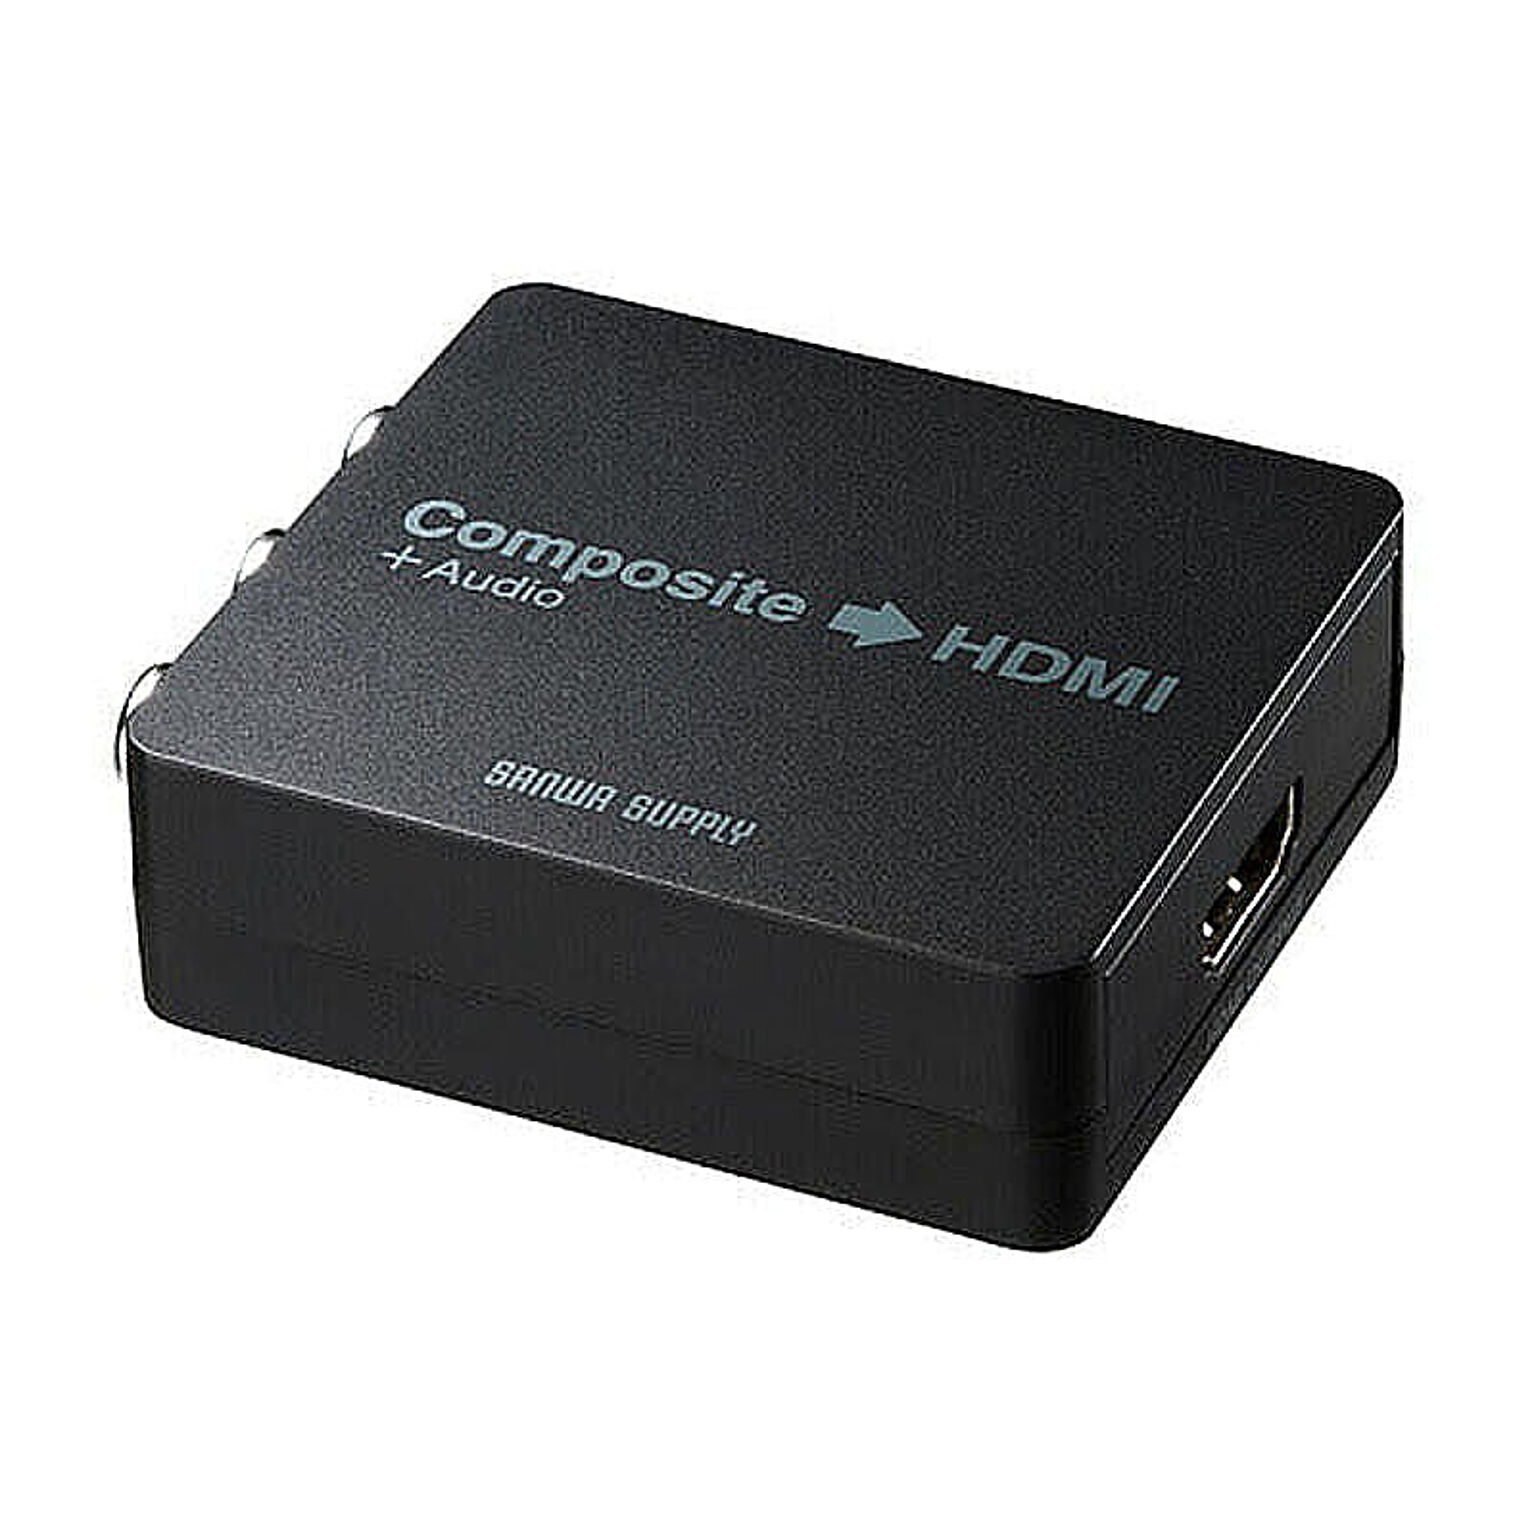 サンワサプライ コンポジット信号HDMI変換コンバータ VGA-CVHD4 管理No. 4969887593486